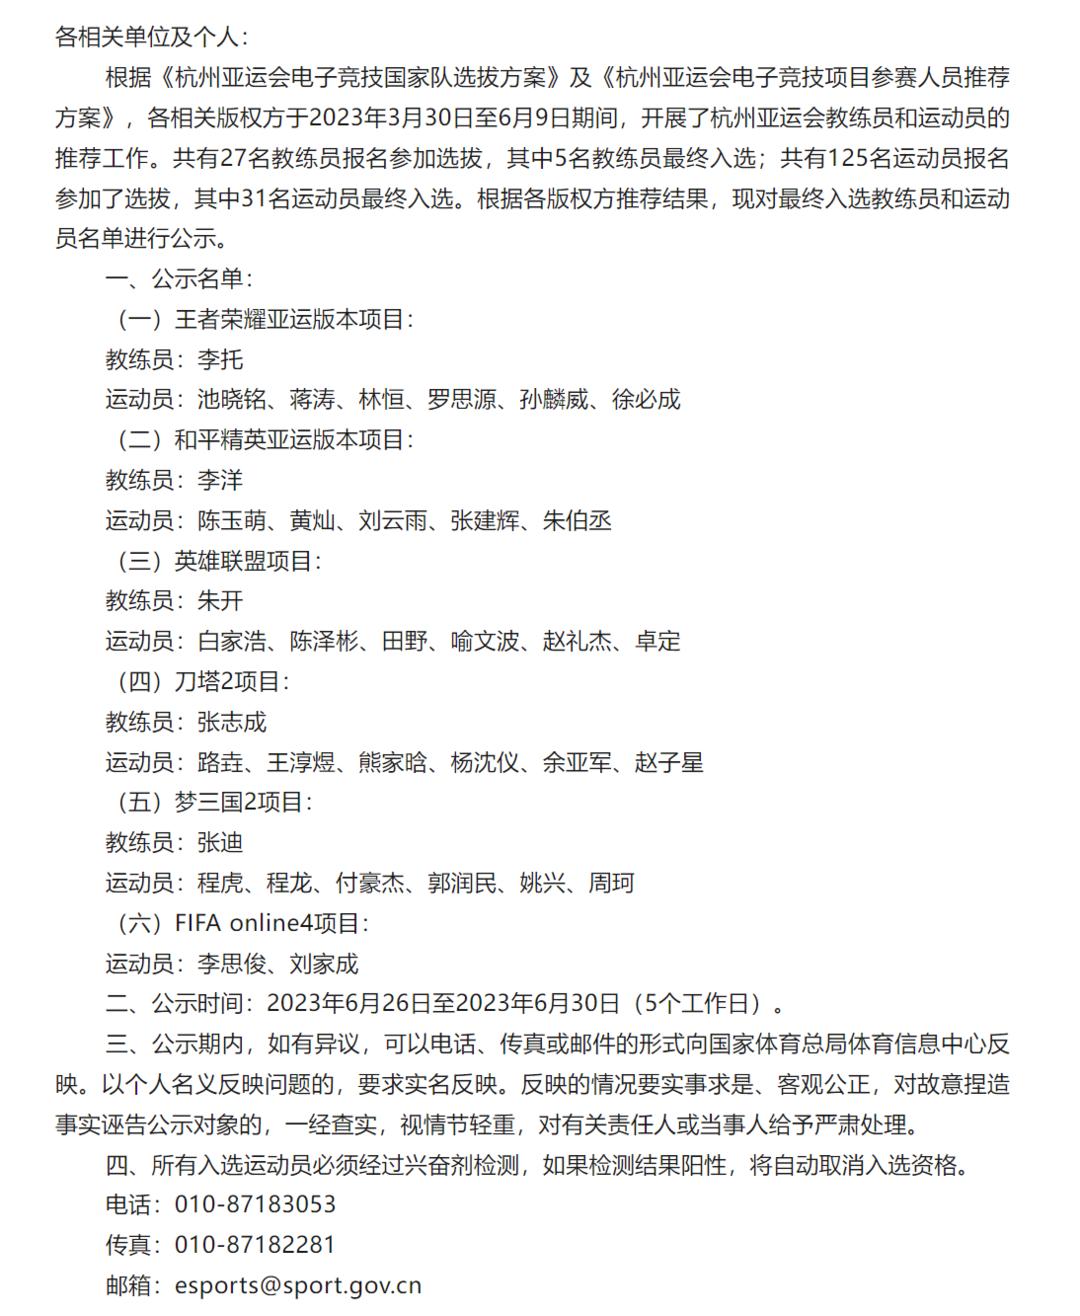 杭州亚运电竞项目参赛名单公示：刀塔2两代LGD混搭 英雄联盟选手全是强队主力